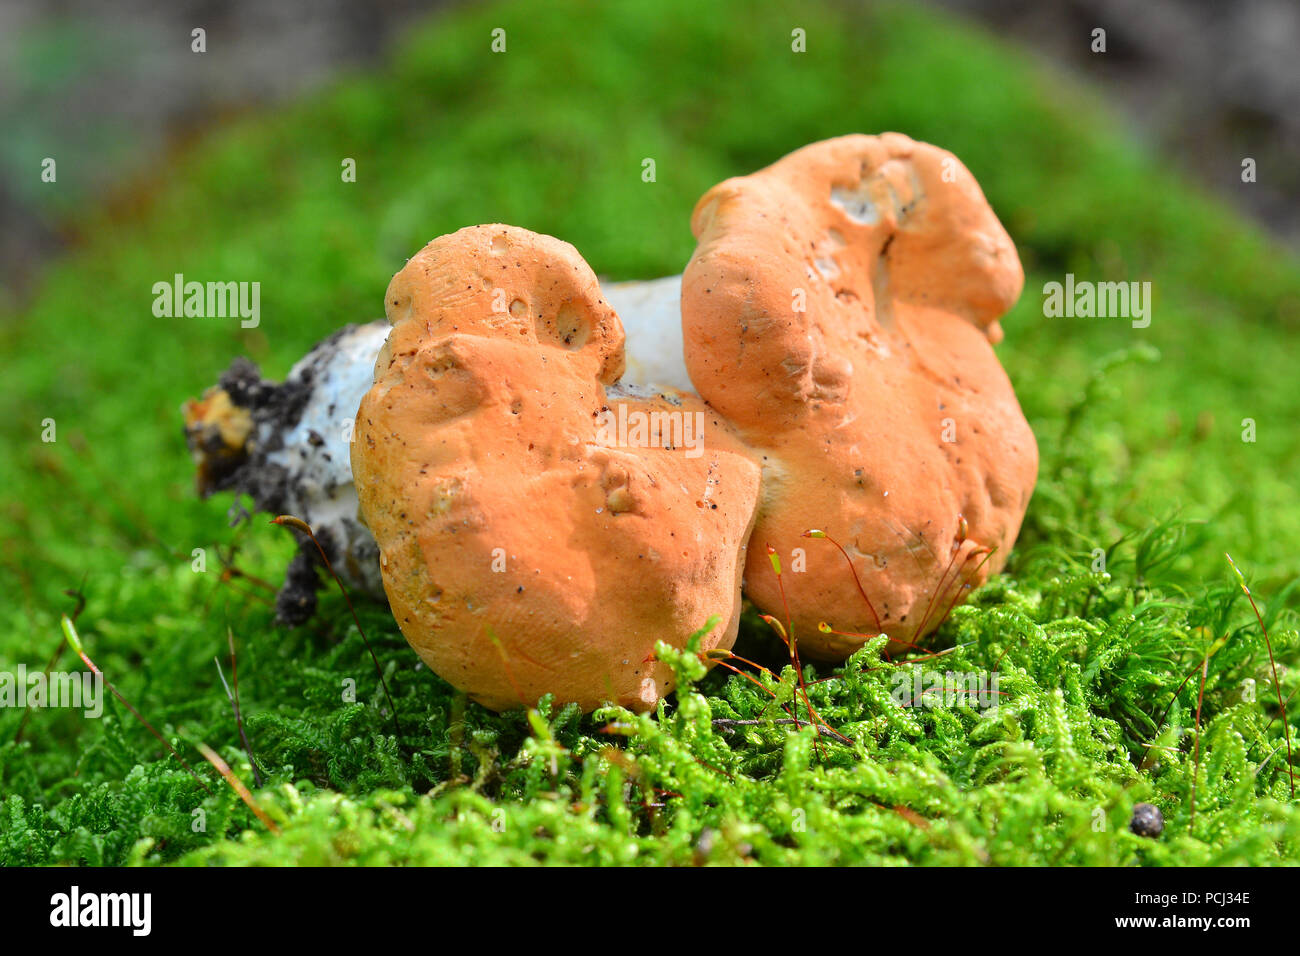 hydnum rufescens mushroom on the ground Stock Photo